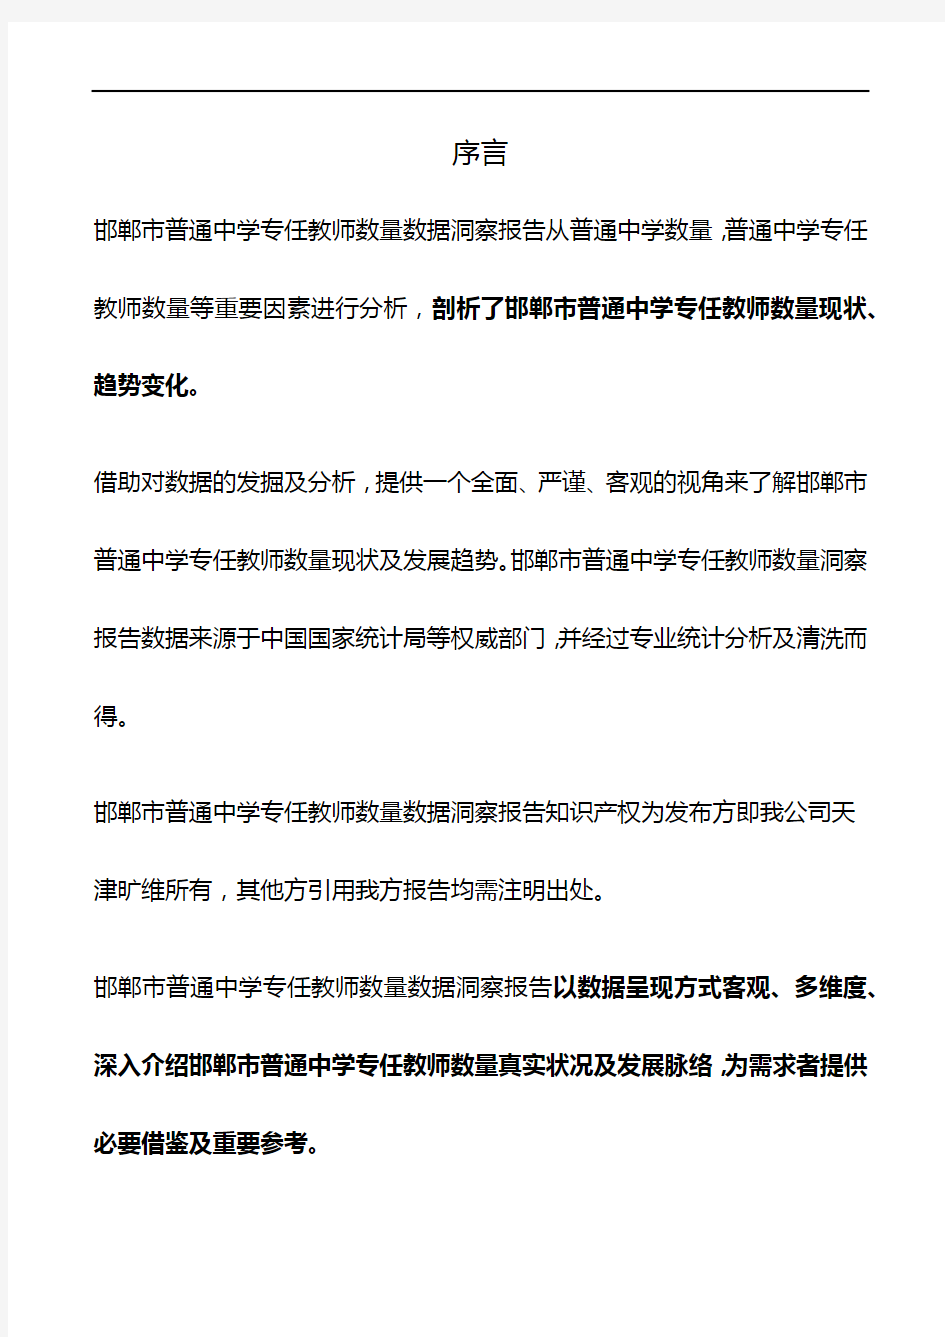 邯郸市(市辖区)普通中学专任教师数量3年数据洞察报告2019版